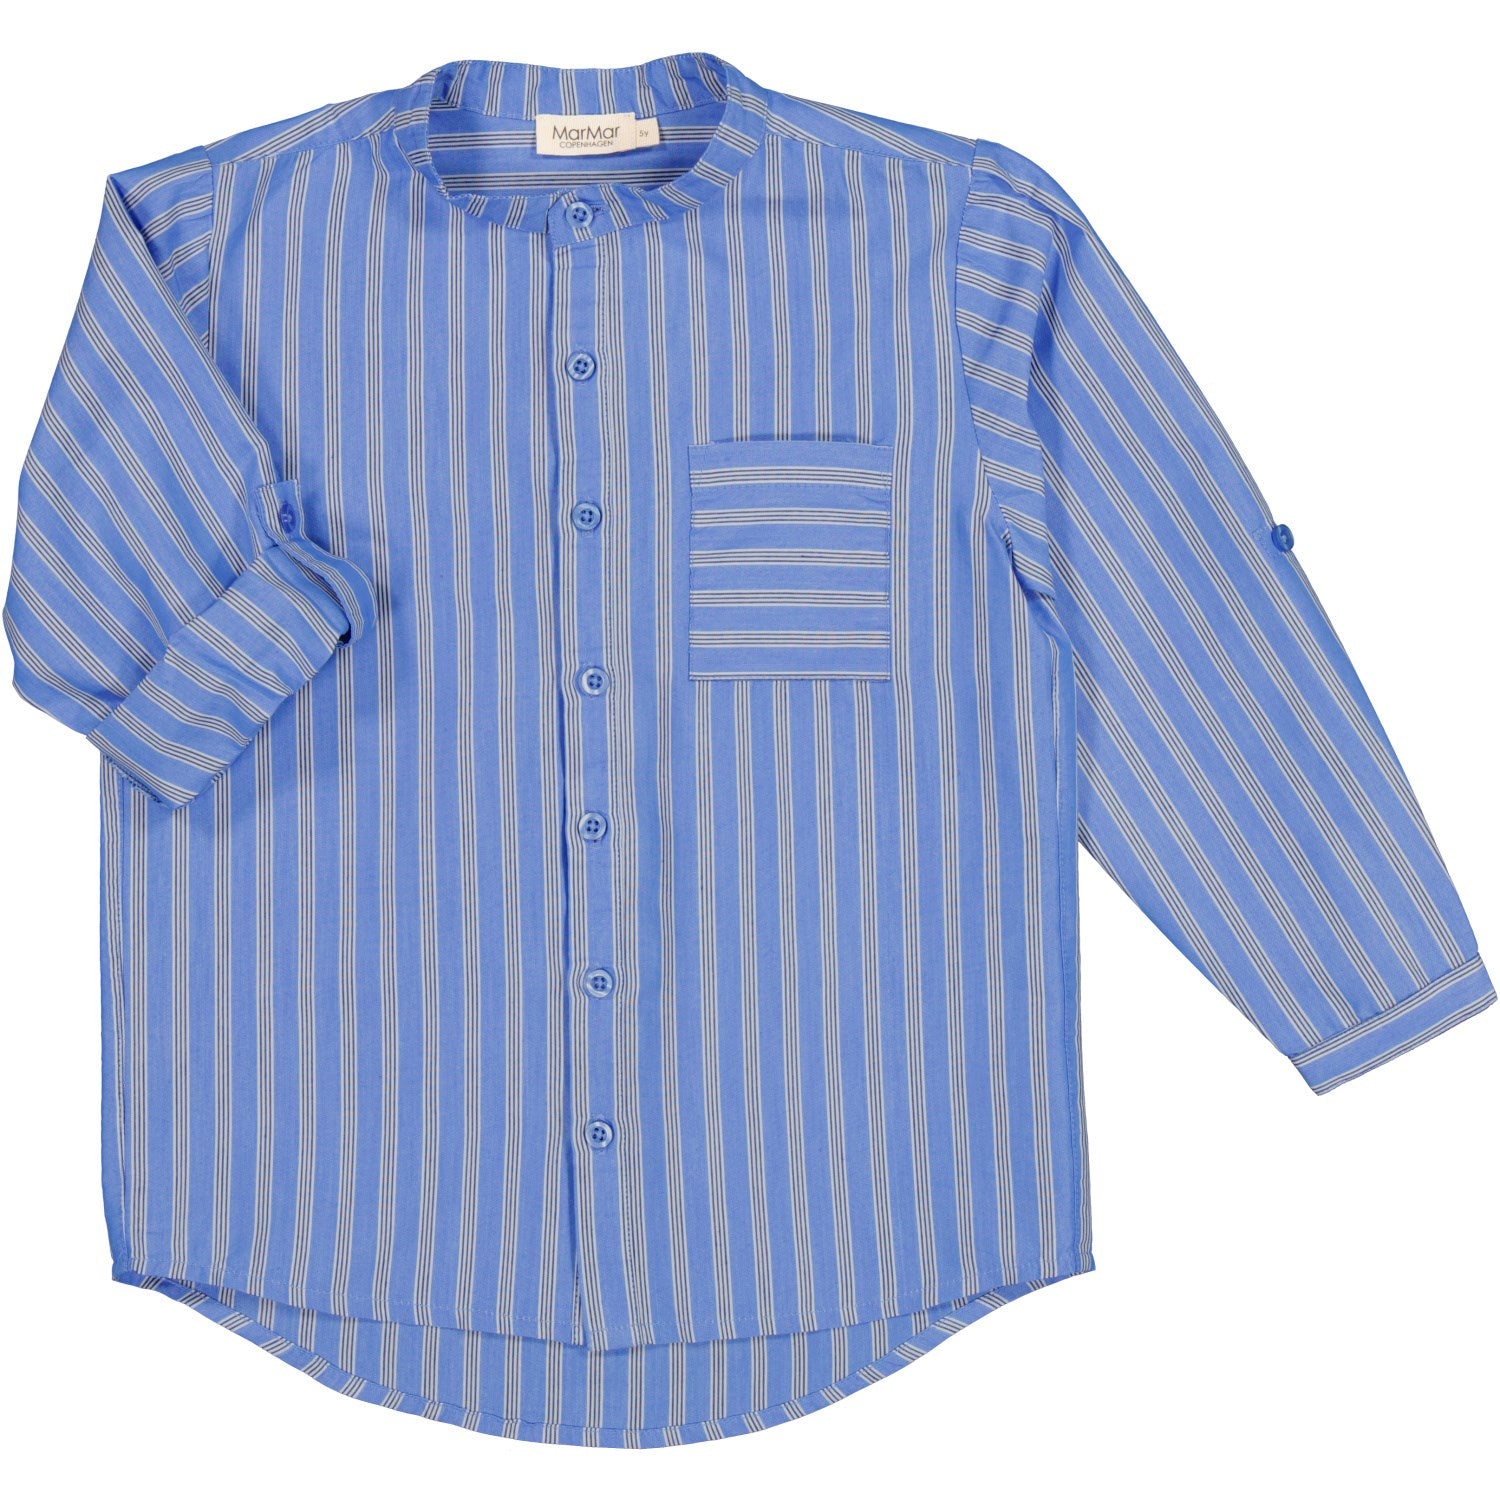 MarMar Smooth Cotton Cornflower Stripe Theodor Shirt 3